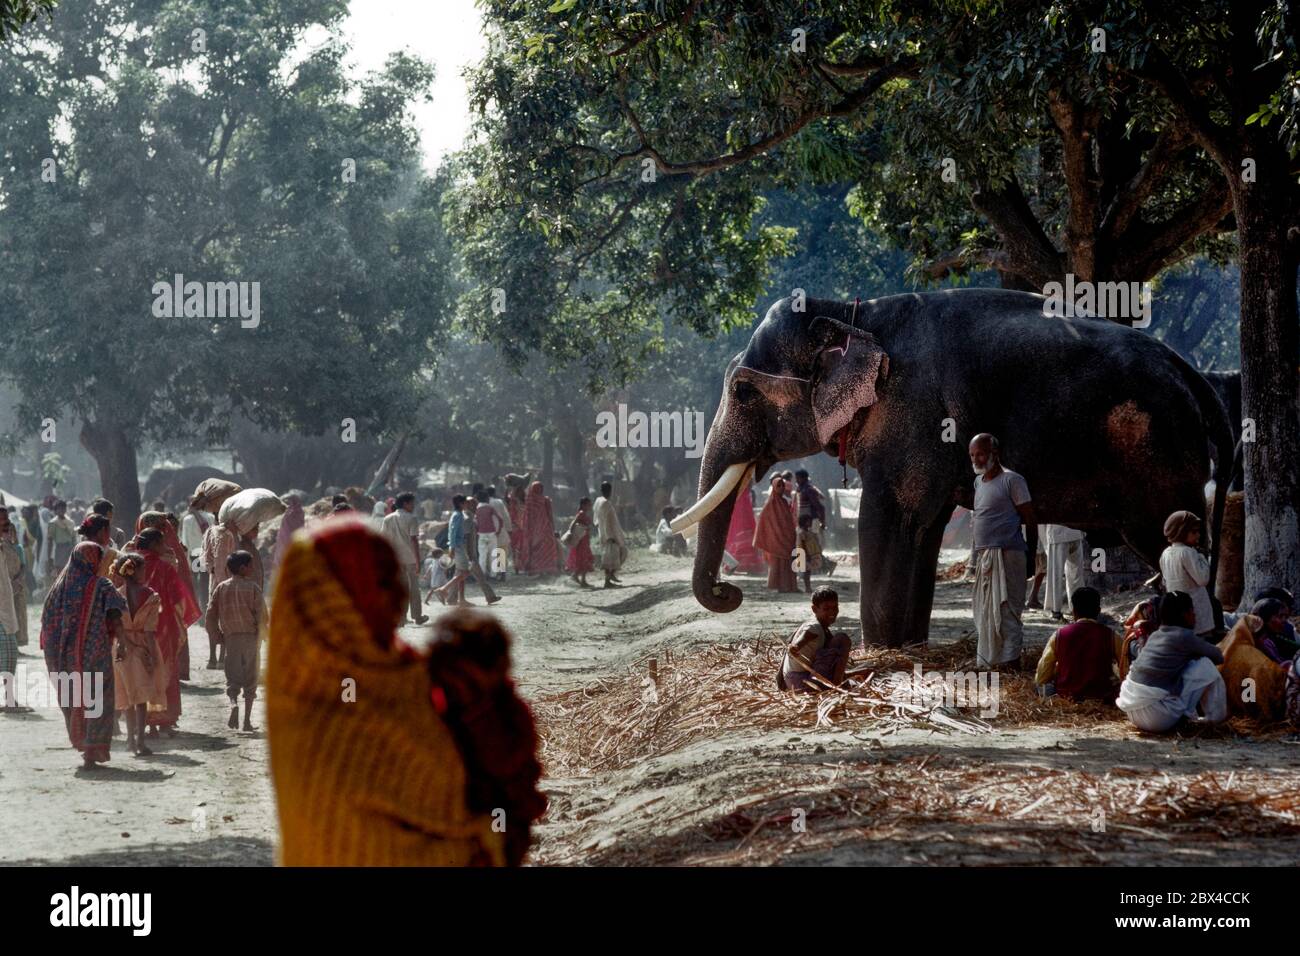 02 Mär 2020 Elefant zu verkaufen in Sonepur Rindermesse oder Sonpur Mela in der Nähe von Patna Bihar Indien Stockfoto